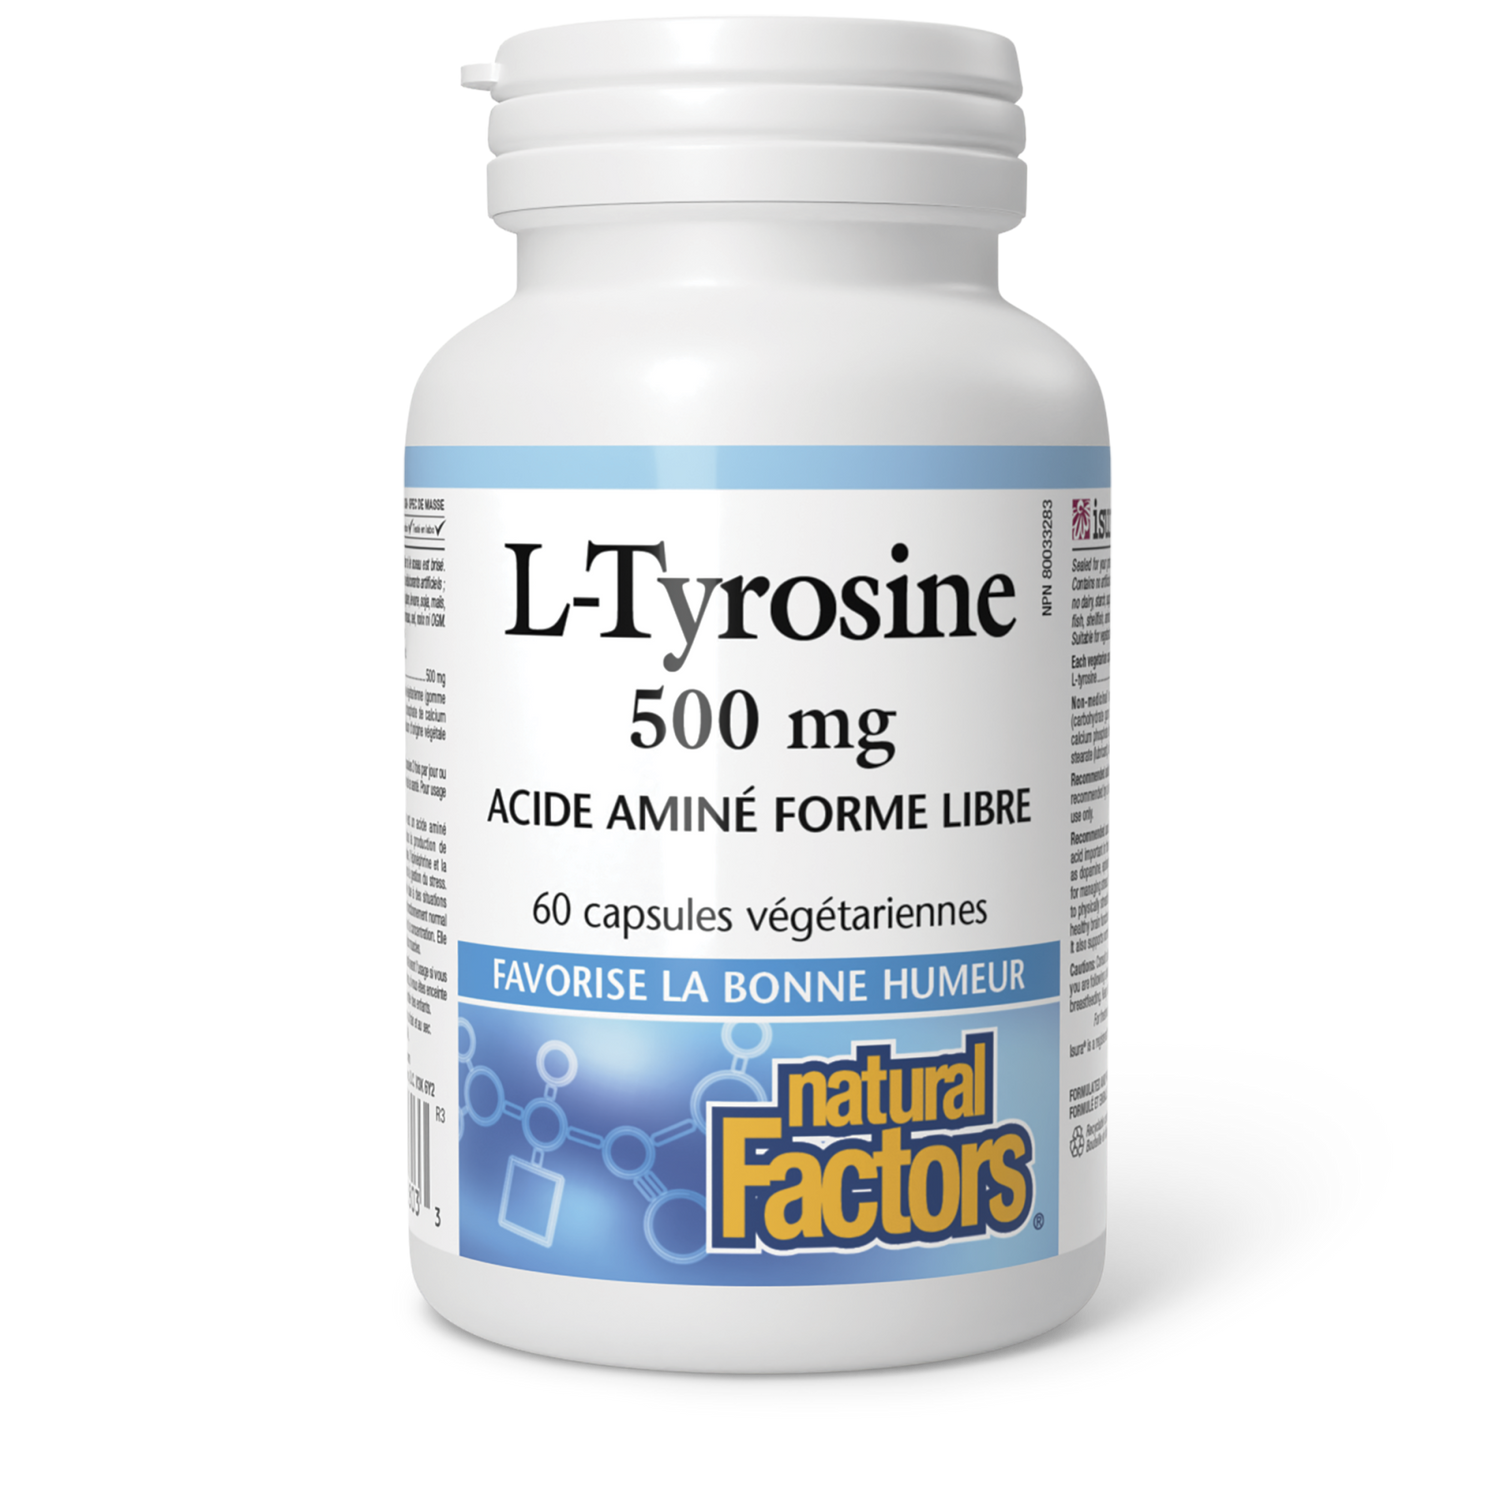 L-Tyrosine 500 mg, Natural Factors|v|image|2803